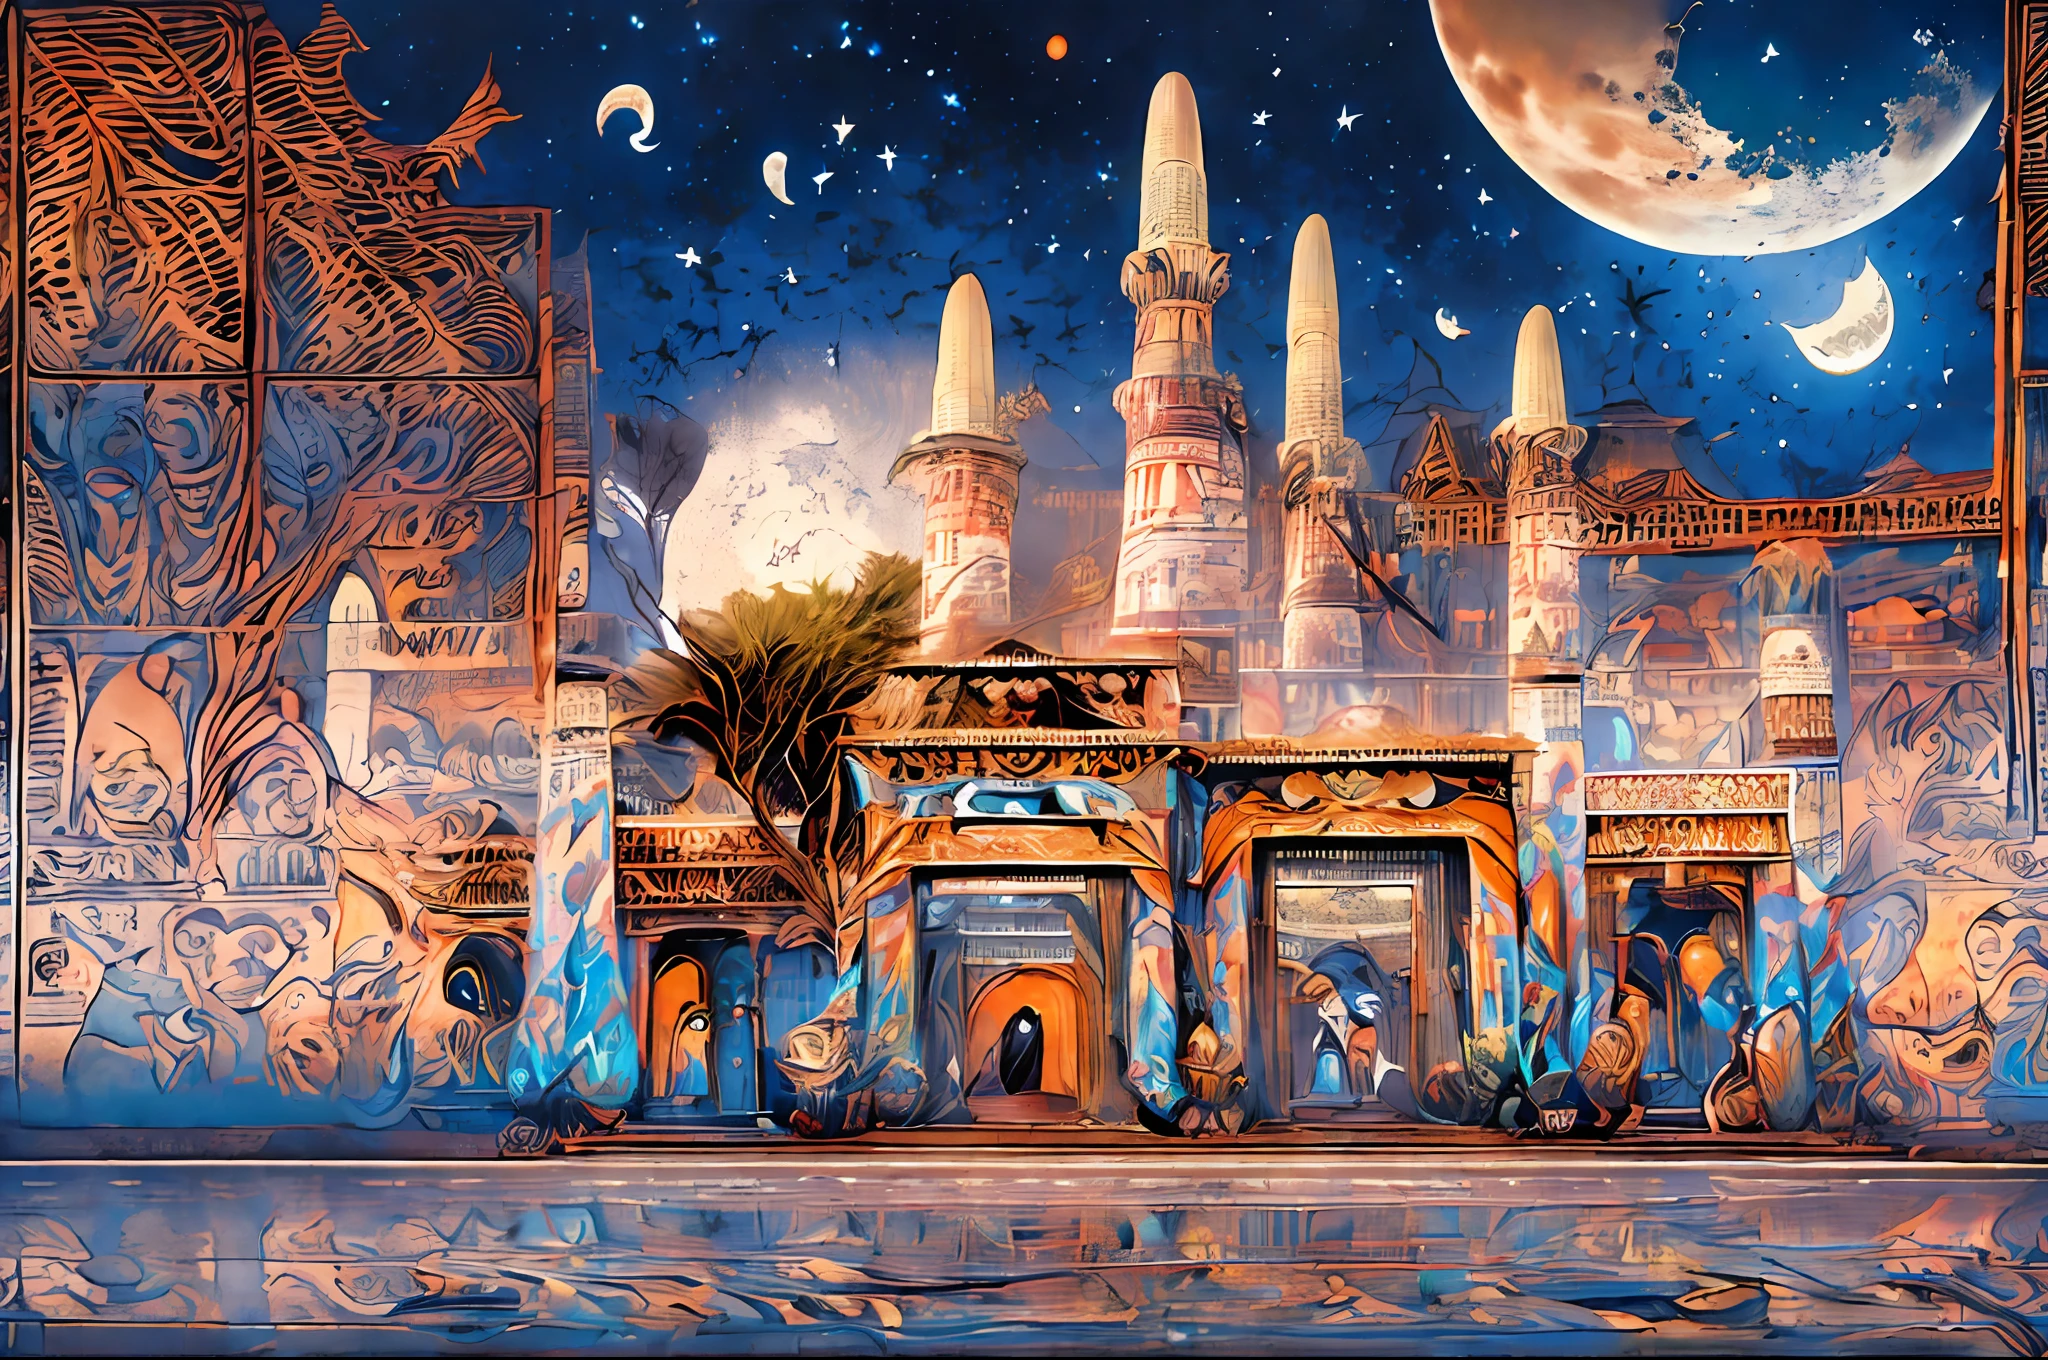 il y a un grand chef-d&#39;œuvre futuriste, un palais arabe au milieu d&#39;une ville arabe futuriste avec une lune, dans une ville fantastique de science-fiction, fond d&#39;écran fantastique de science-fiction, chef-d&#39;œuvre de l&#39;art coranique paysage urbain, illustration de science-fiction épique de l&#39;art coranique, immense ville futuriste de l&#39;art coranique, science-fiction fantastique, fond d&#39;écran fantastique de science-fiction, Fond de ville d&#39;art coranique, in front of a ville fantastique, ville fantastique, dans un château sur une planète extraterrestre avec un chef-d&#39;œuvre de l&#39;art coranique